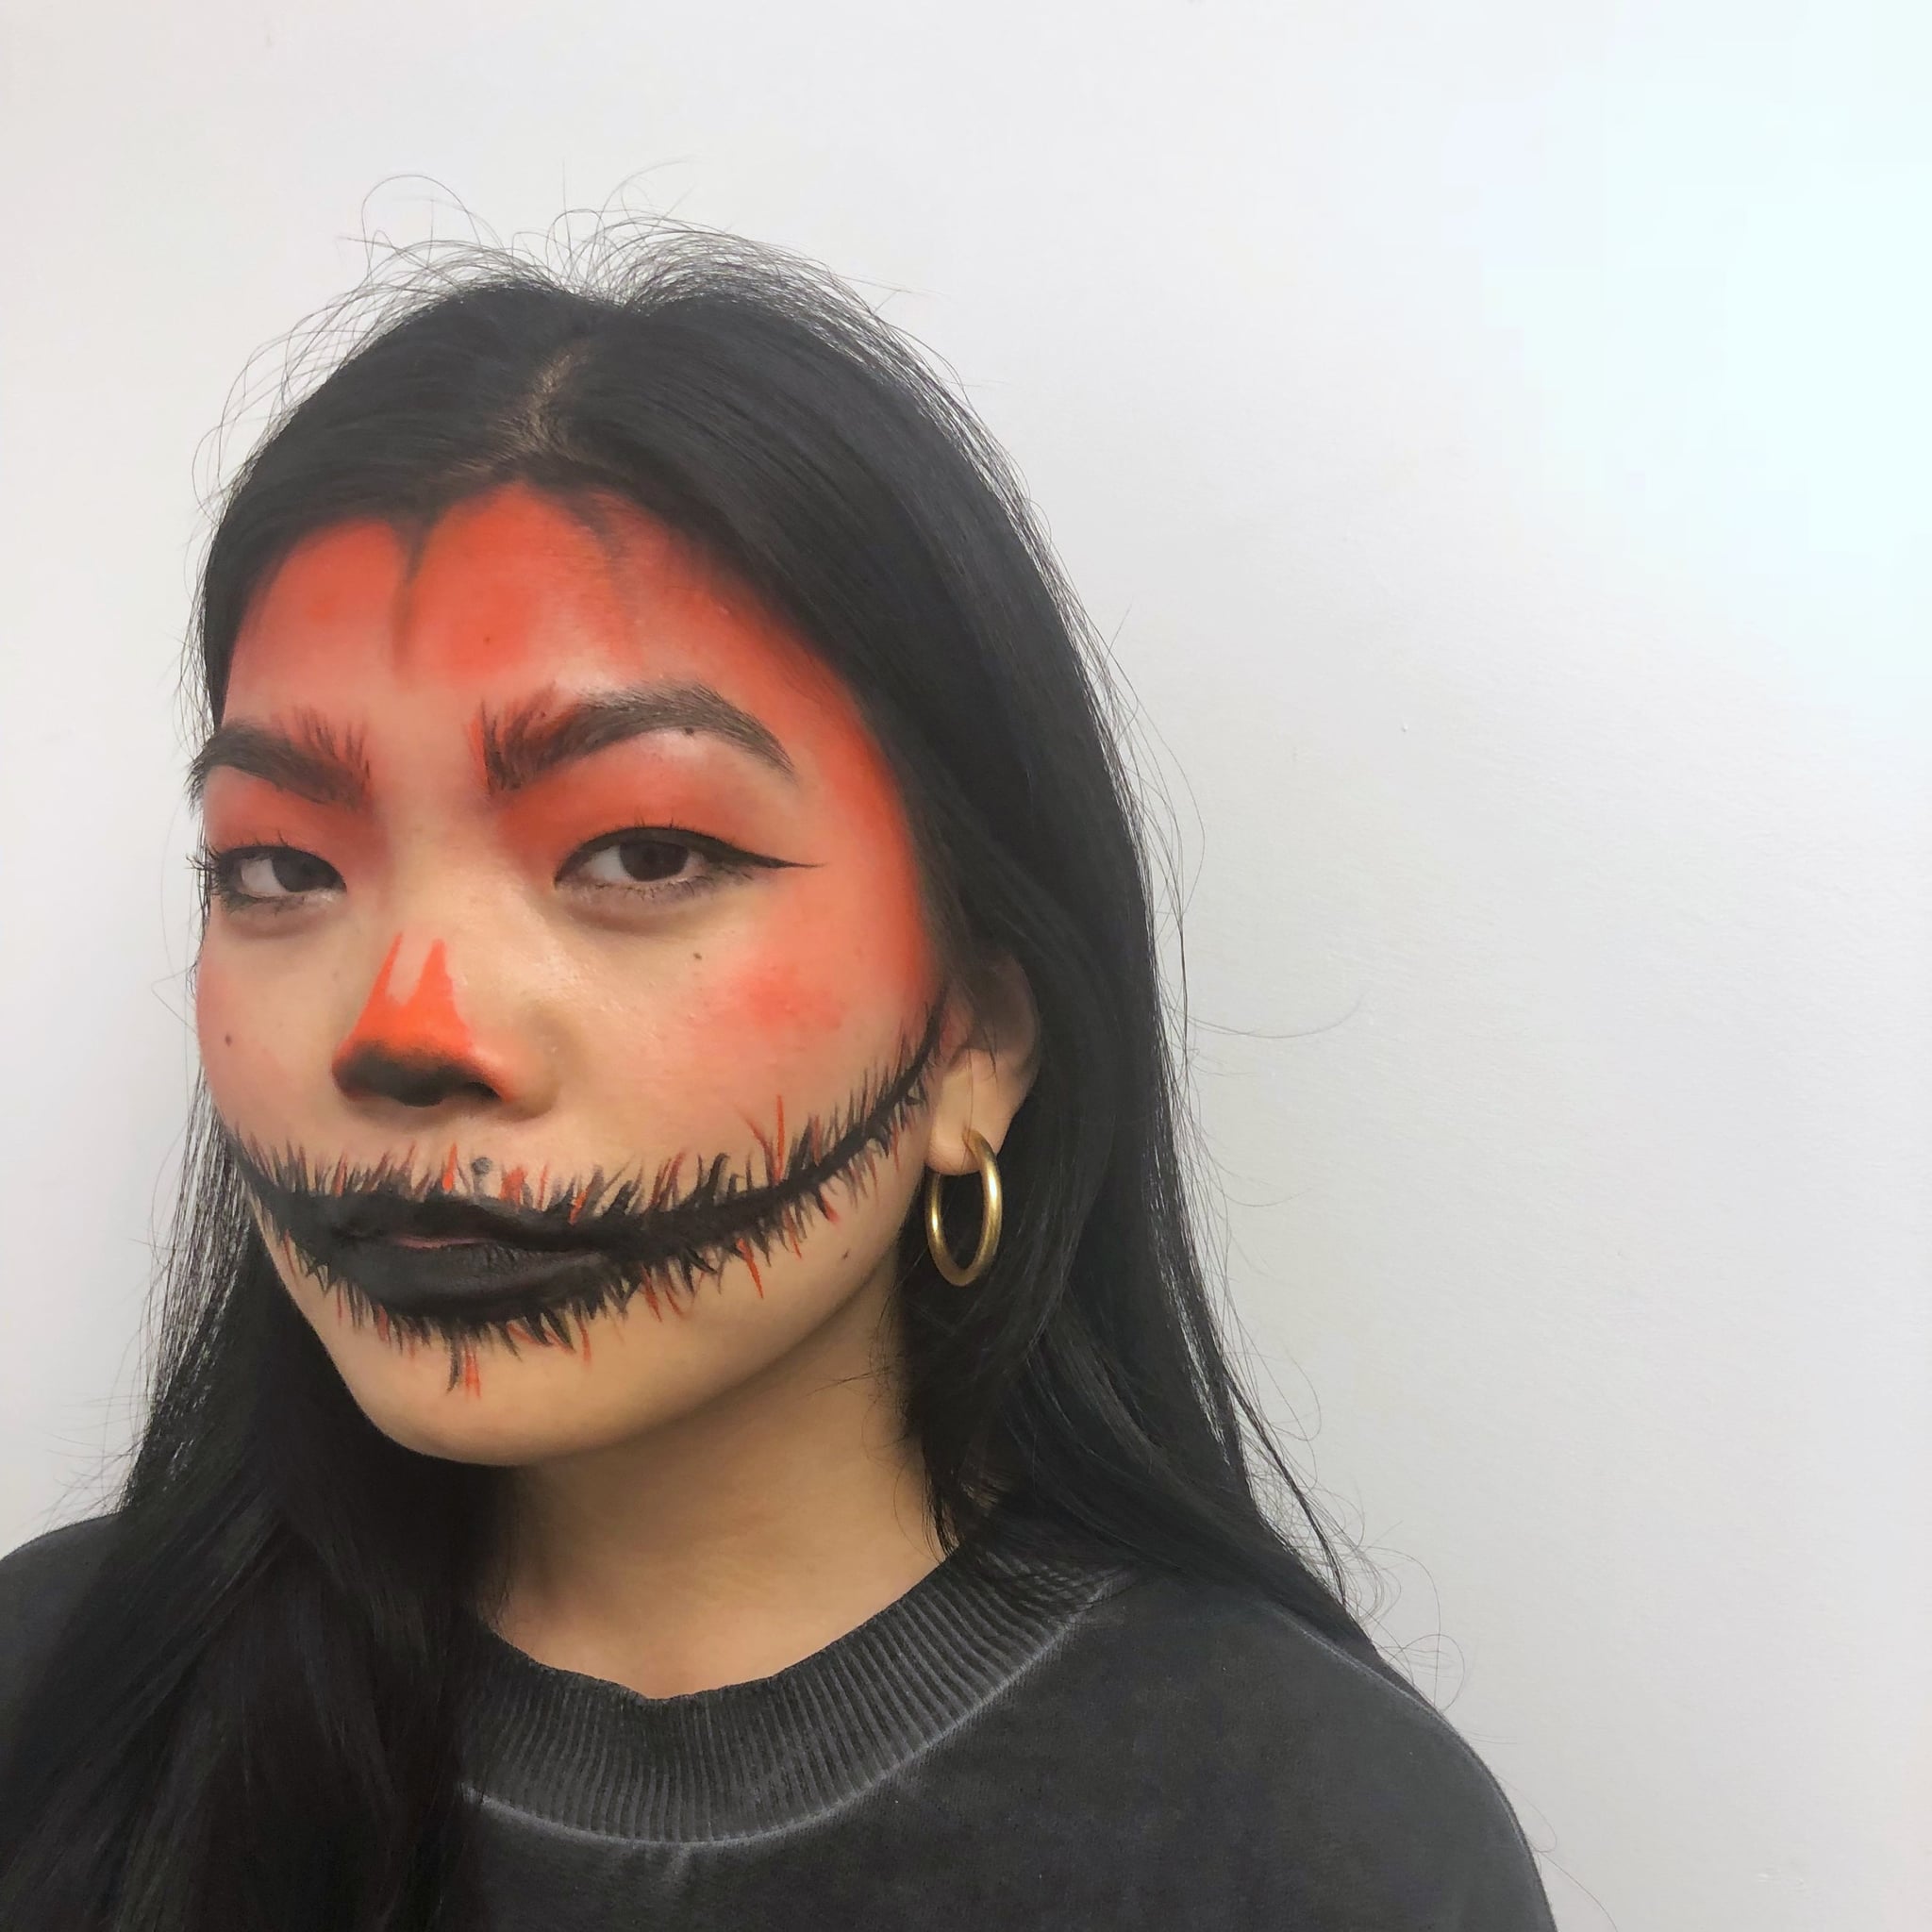 Evil Pumpkin Face Makeup Ideas to Haunt Your Halloween Look!